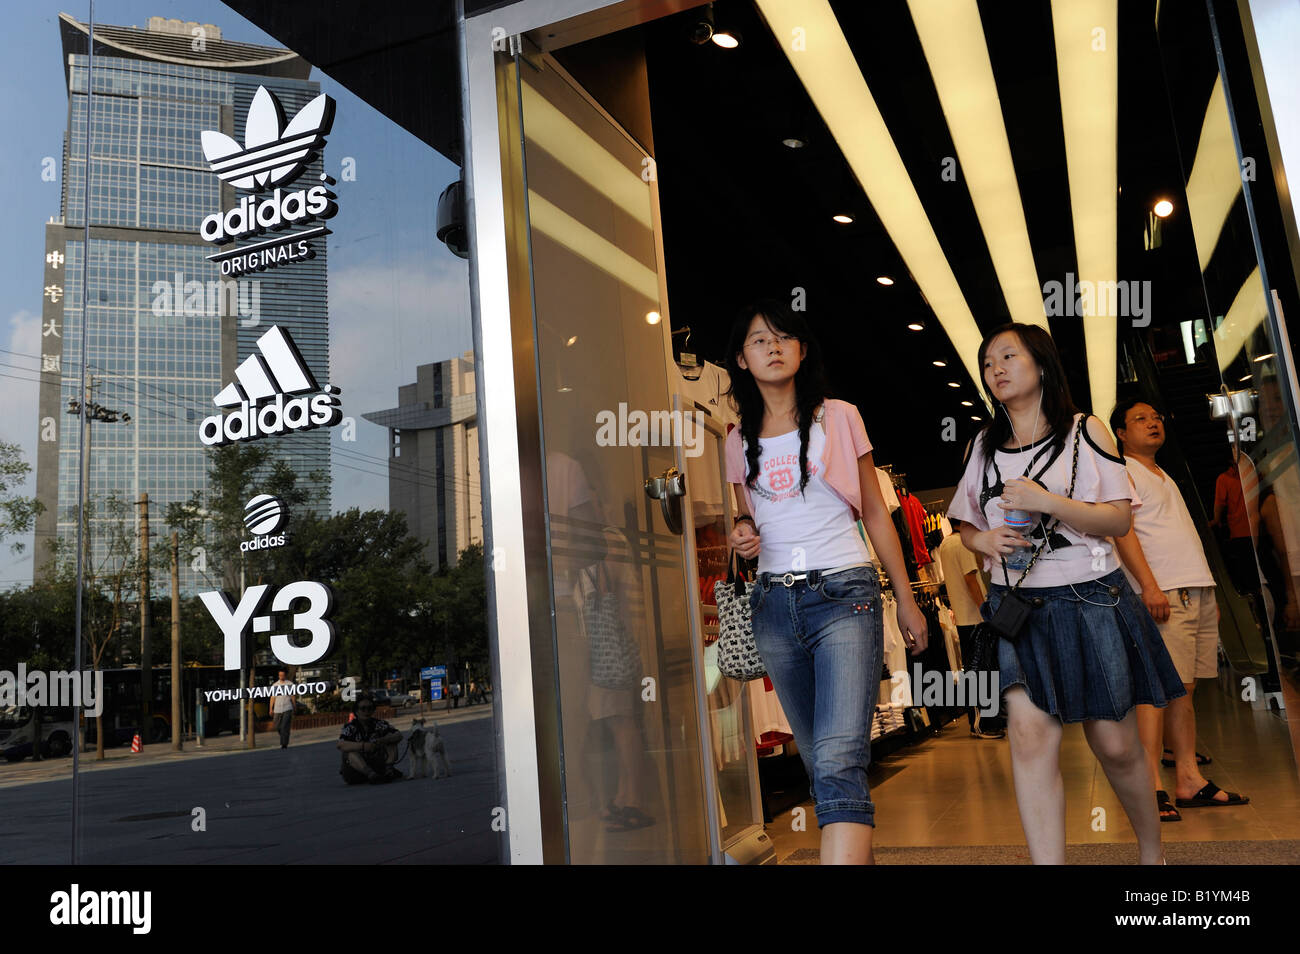 La mayor salida de Adidas en el mundo abierto en Beijing, China. 06-Jul-2008 de stock - Alamy